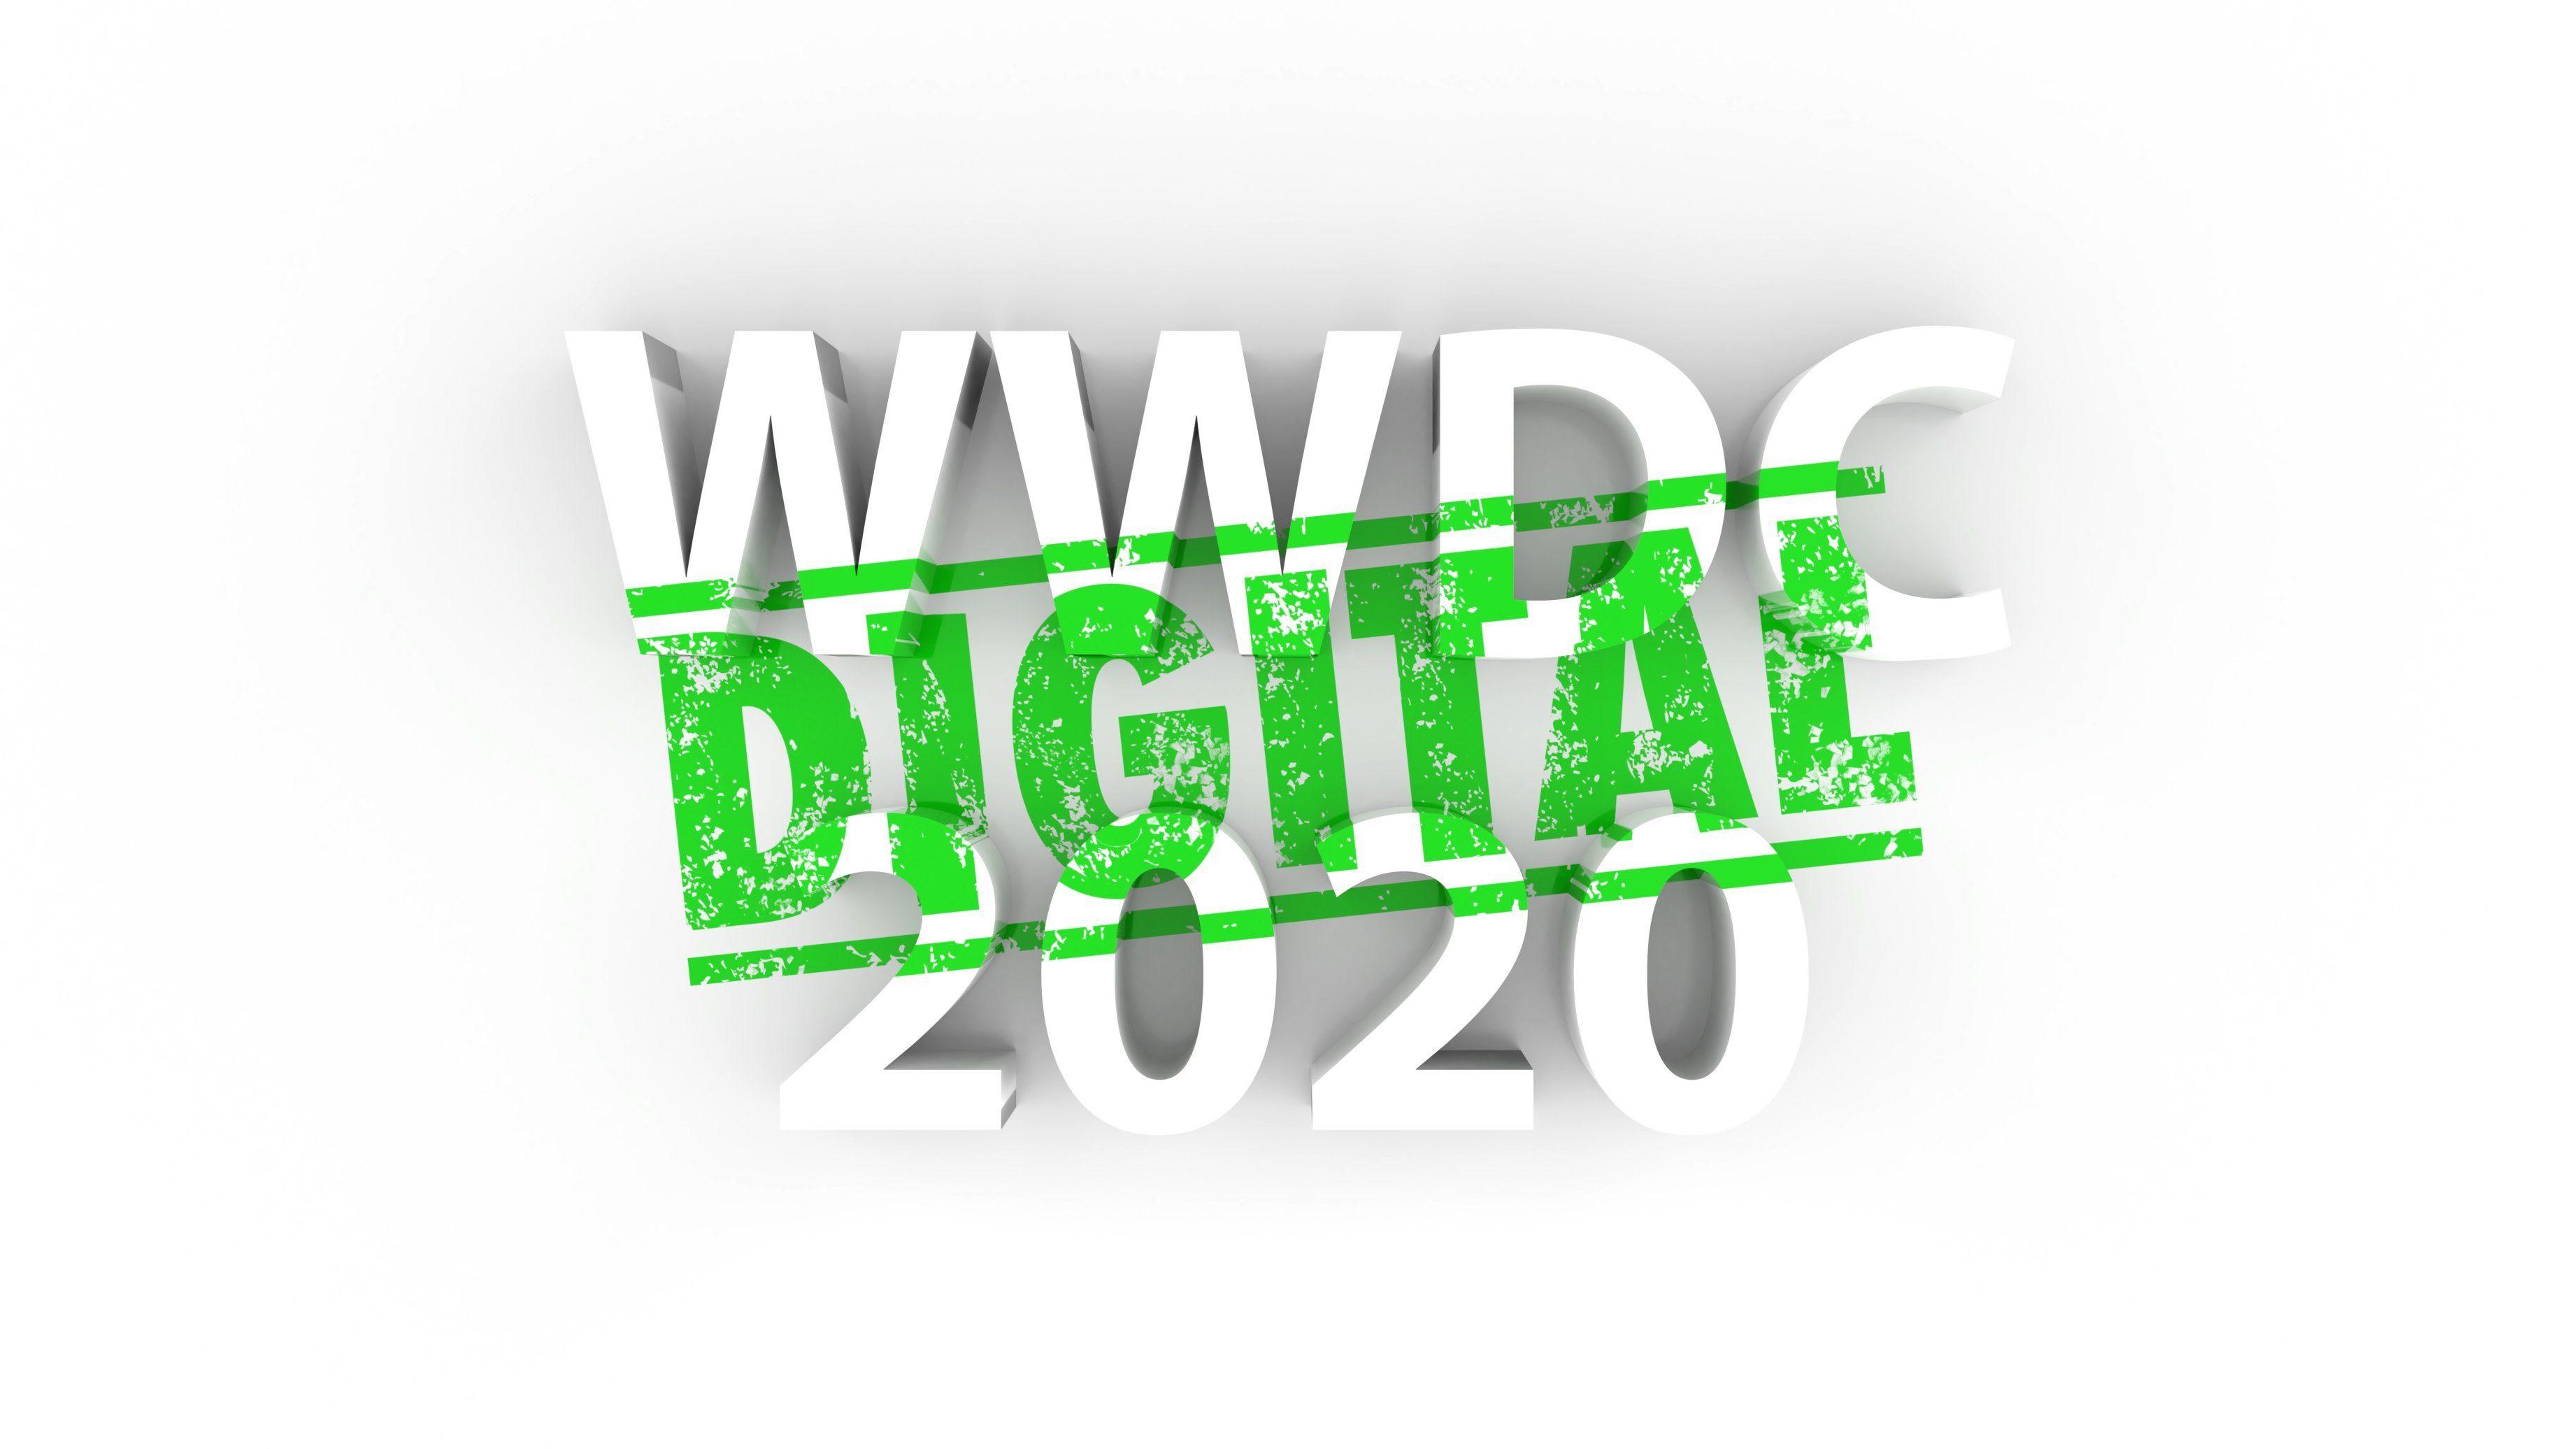 Apple WWCD etkinliğini bu yıl online olarak yapılacak